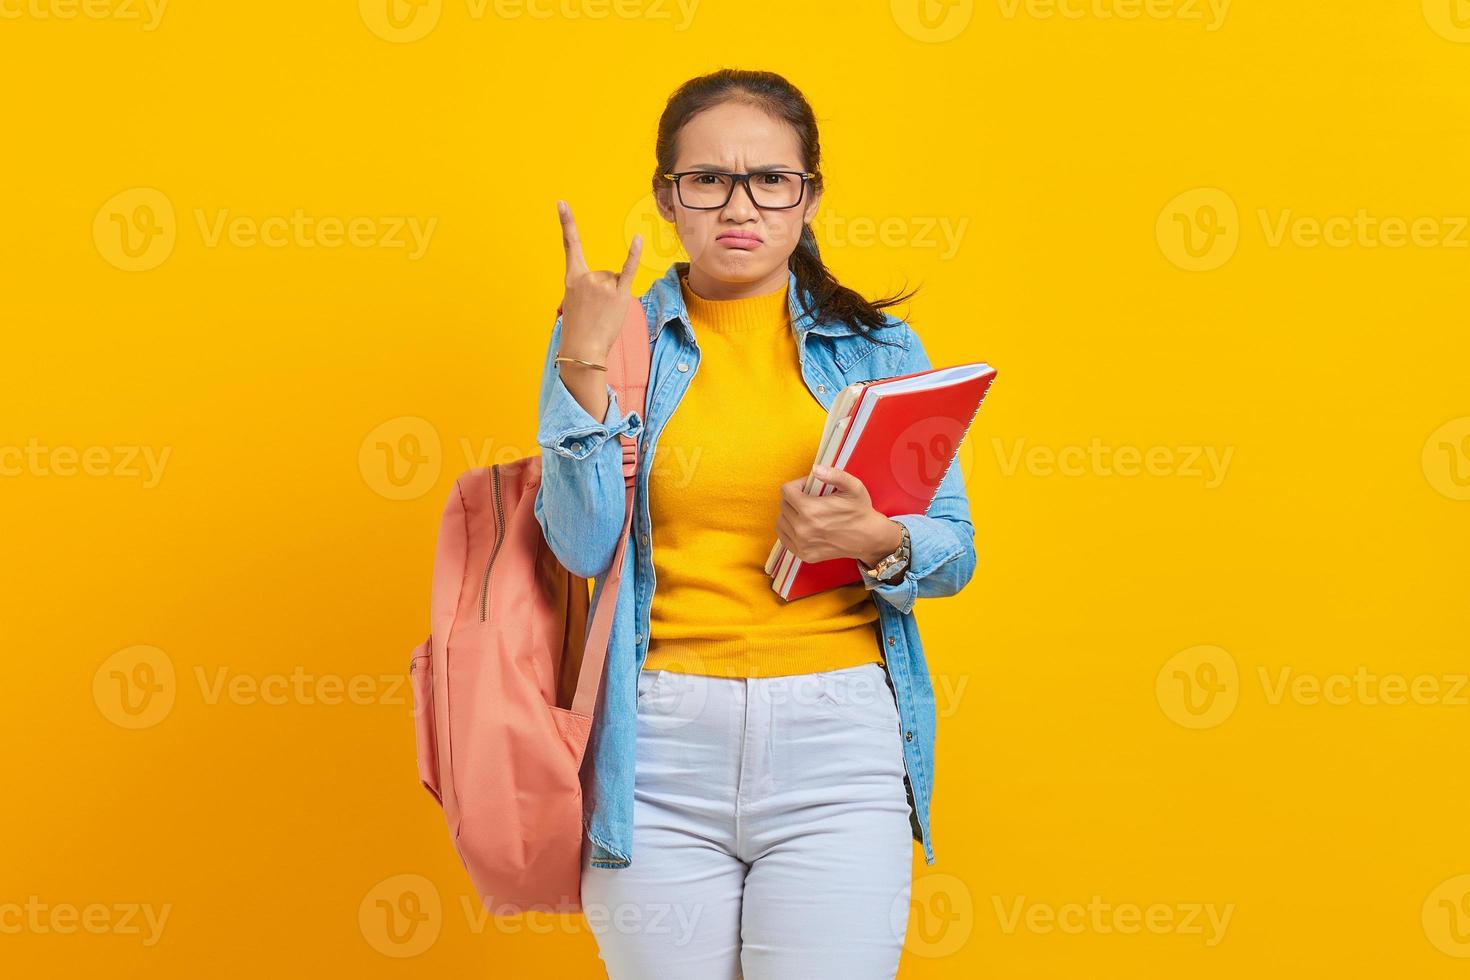 porträtt av vacker ung asiatisk student i jeanskläder med ryggsäck som håller anteckningsboken och skriker med galet uttryck som gör rocksymbol med händerna upp isolerade på gul bakgrund foto